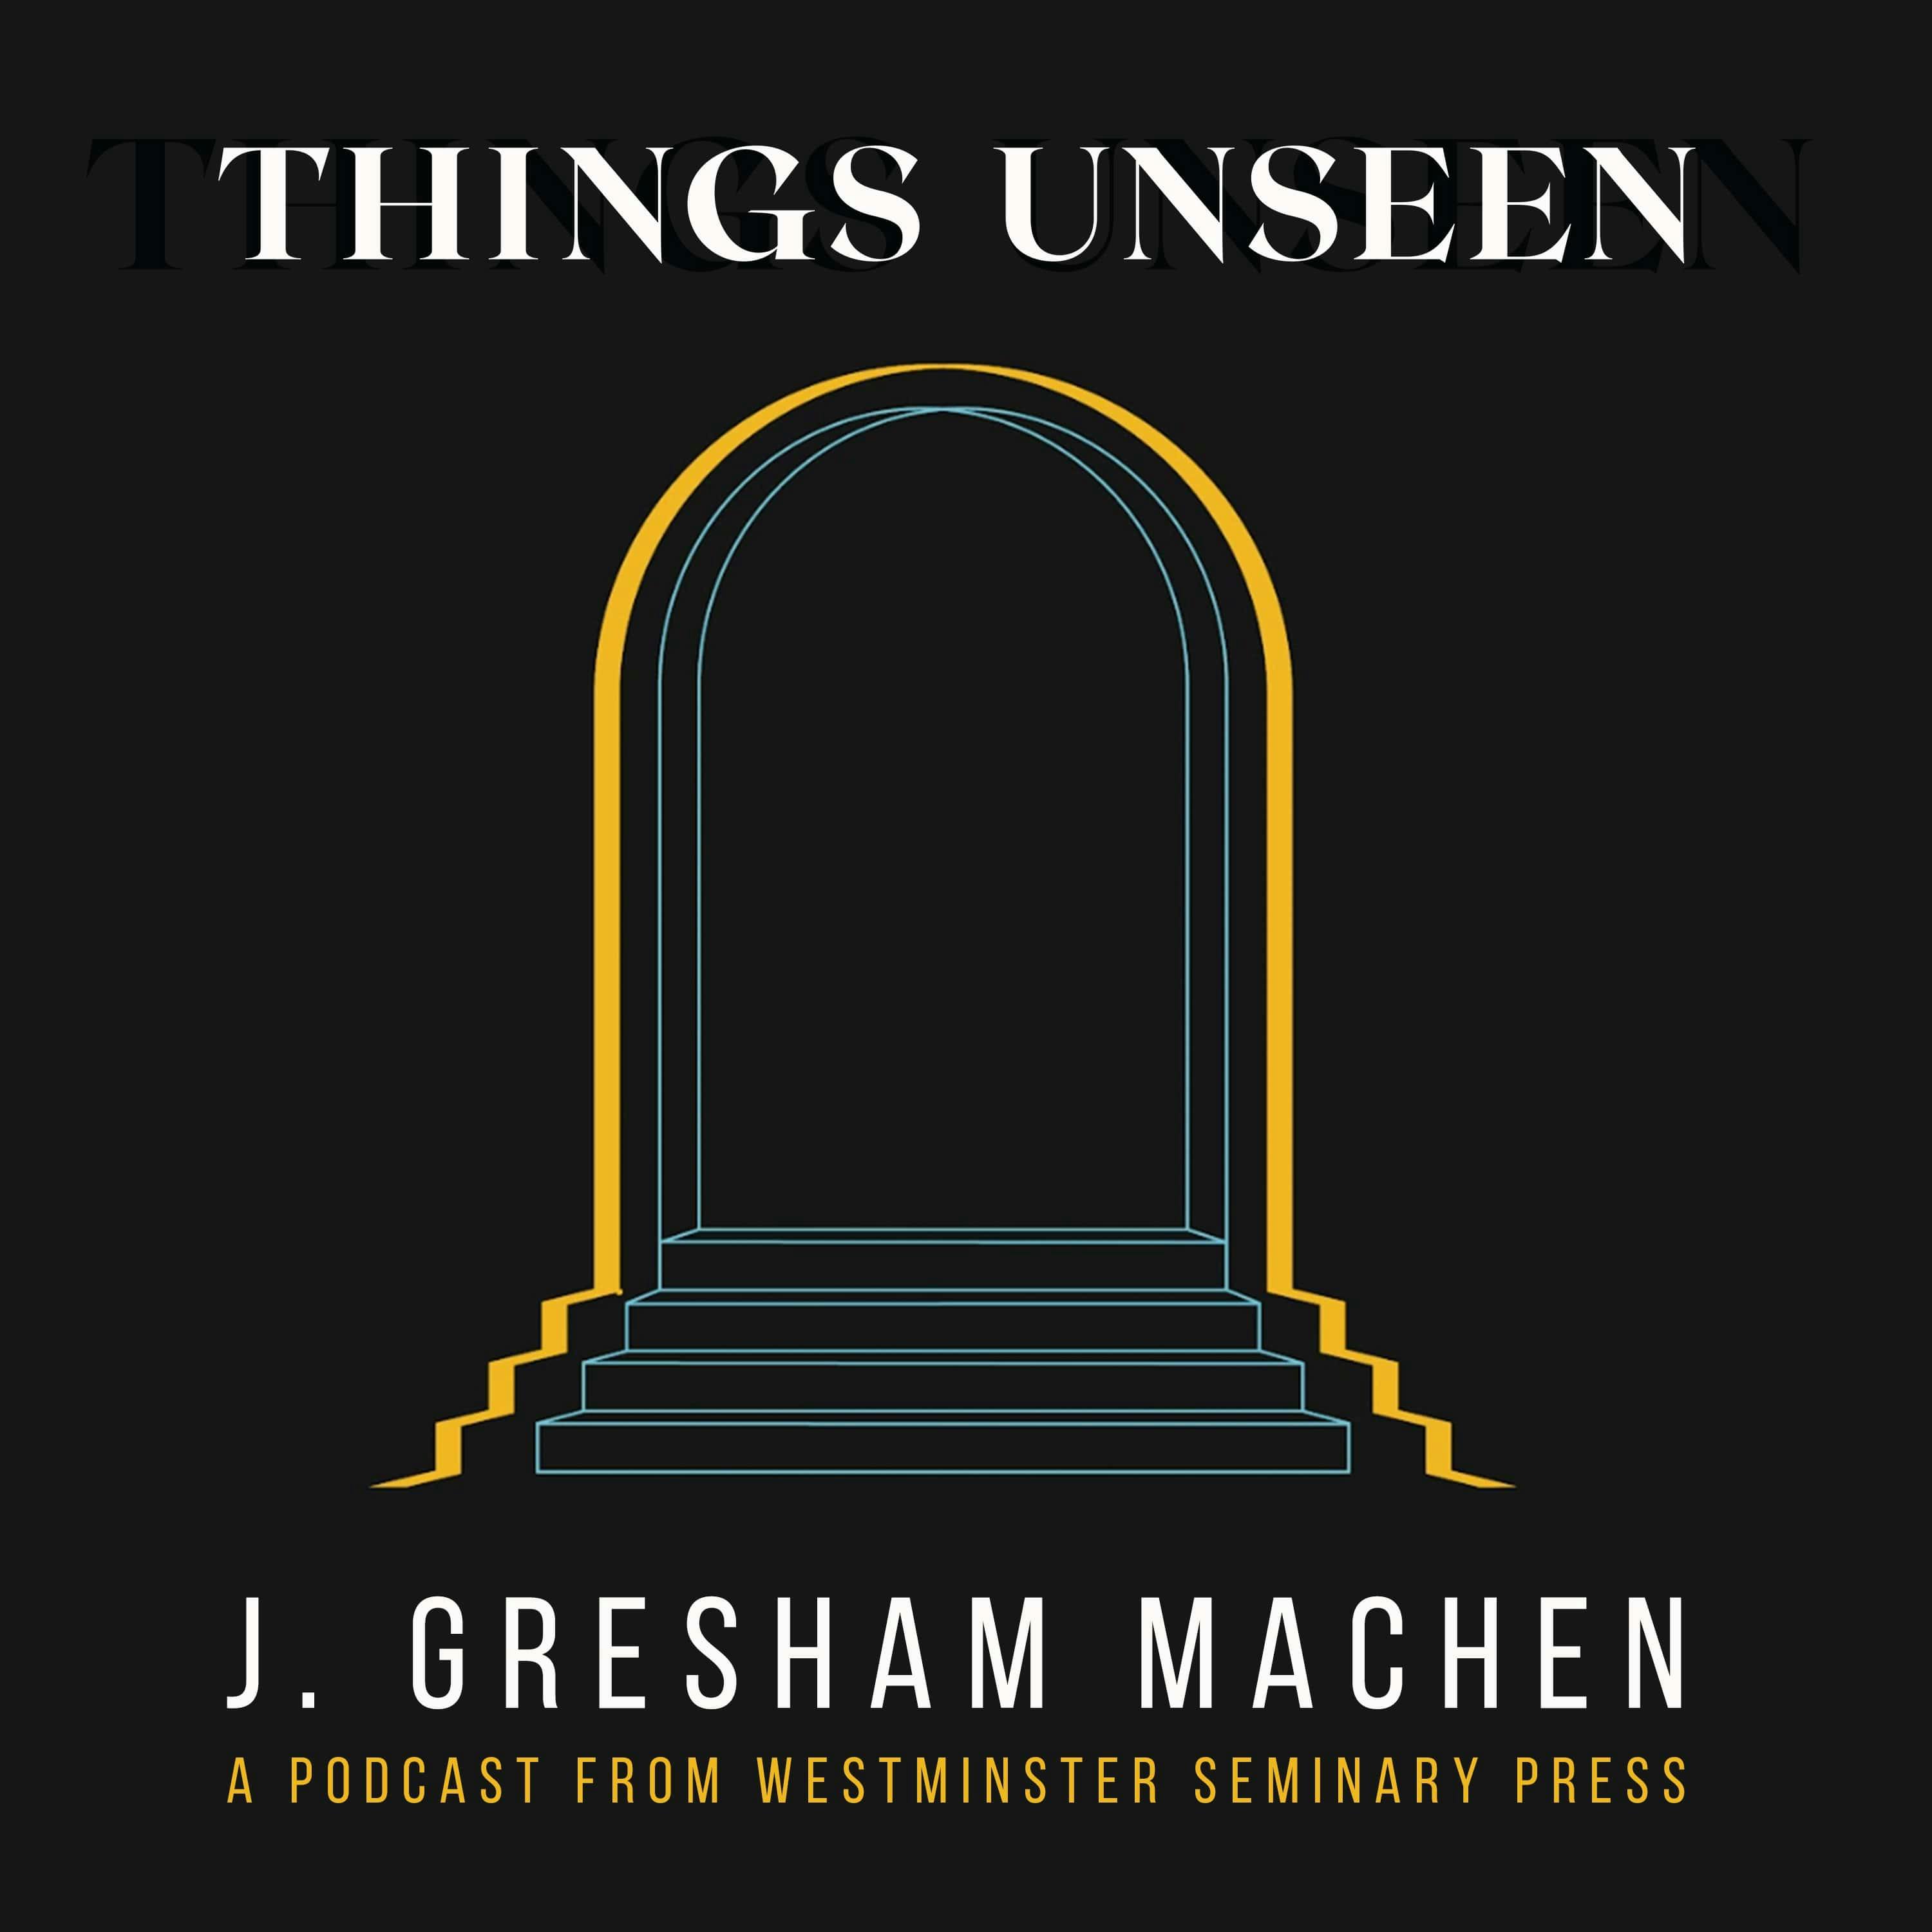 Things Unseen by J. Gresham Machen – Trailer